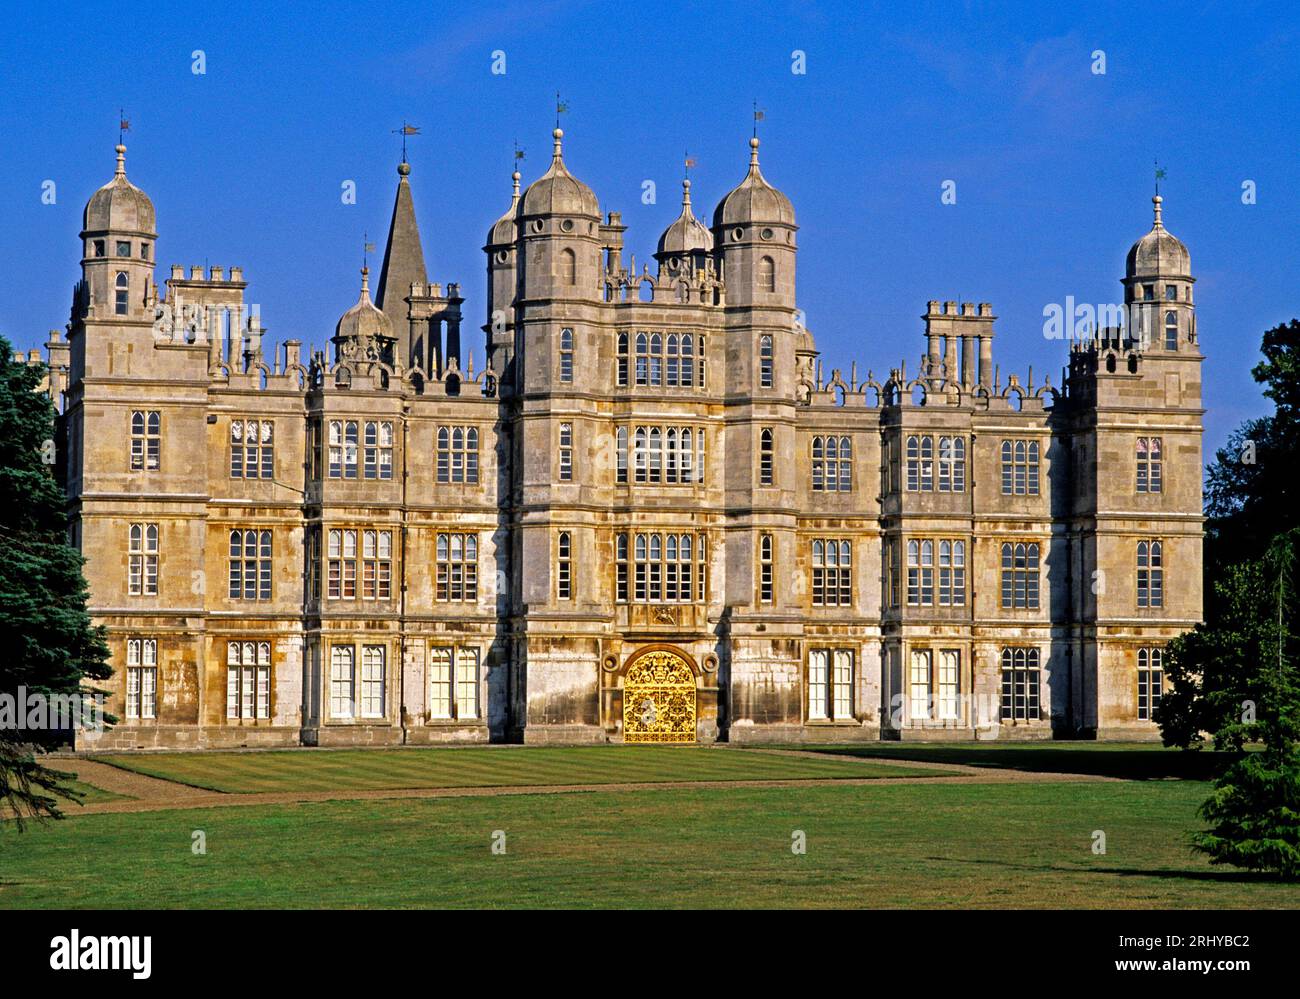 Burghley House, near Stamford, Elizabethan stately home, Lincolnshire / Cambridgeshire, England, UK... Stock Photo